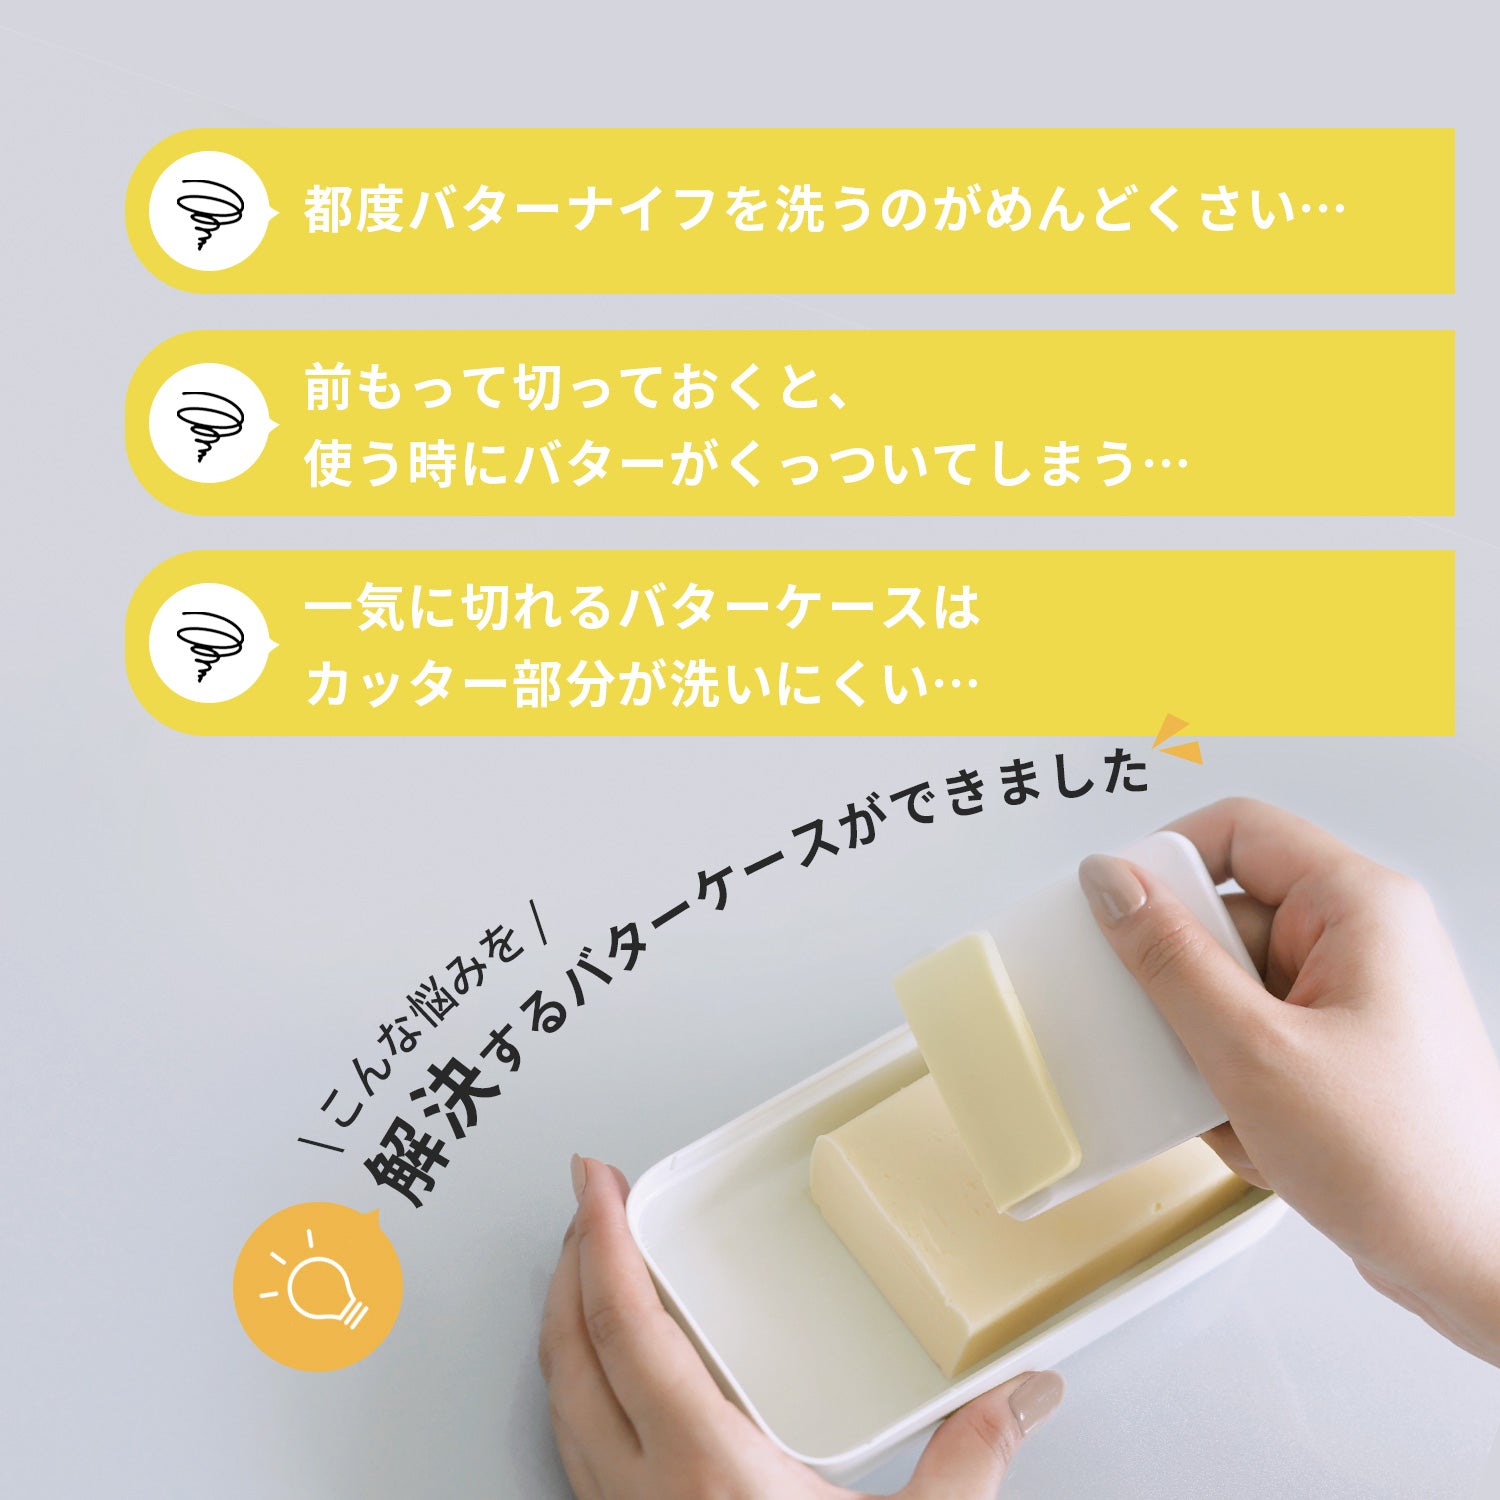 【預購】日本進口 Marna 牛油切片密封收納盒 (適用於200克) - Cnjpkitchen ❤️ 🇯🇵日本廚具 家居生活雜貨店